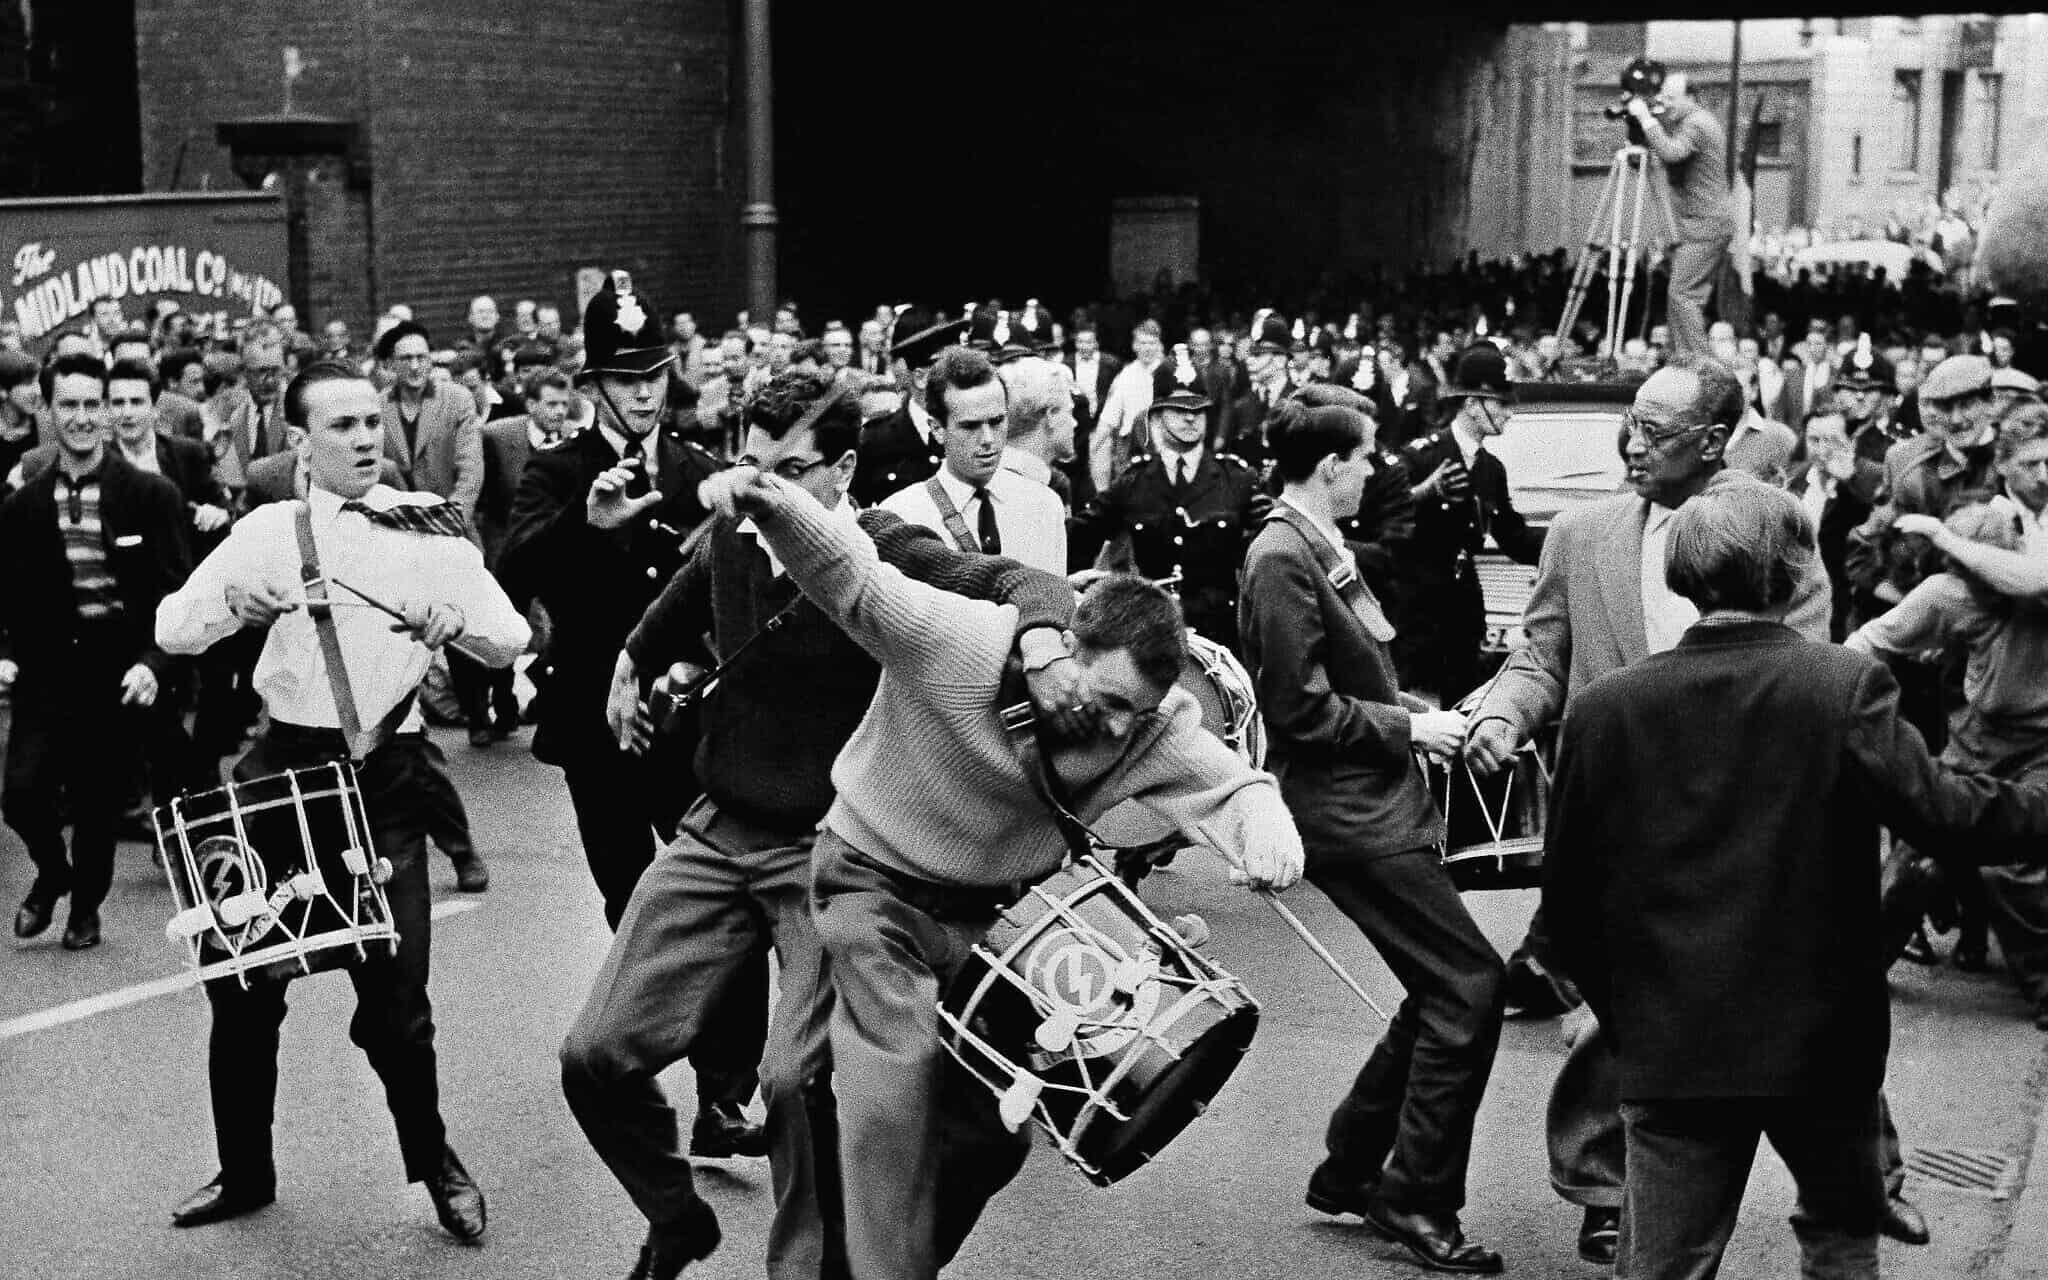 משקיף זועם תוקף את אחד המתופפים של מנהיג הפשיסטים בבריטניה, אוסוולד מוסלי, ראש תנועת האיחוד הימנית הקיצונית, במהלך צעדה במנצ'סטר, אנגליה, ב-29 ביולי 1962. אבנים ועגבניות הושלכו לעבר הצועדים לפני שהם הותקפו פיזית בידי הקהל (צילום: AP)